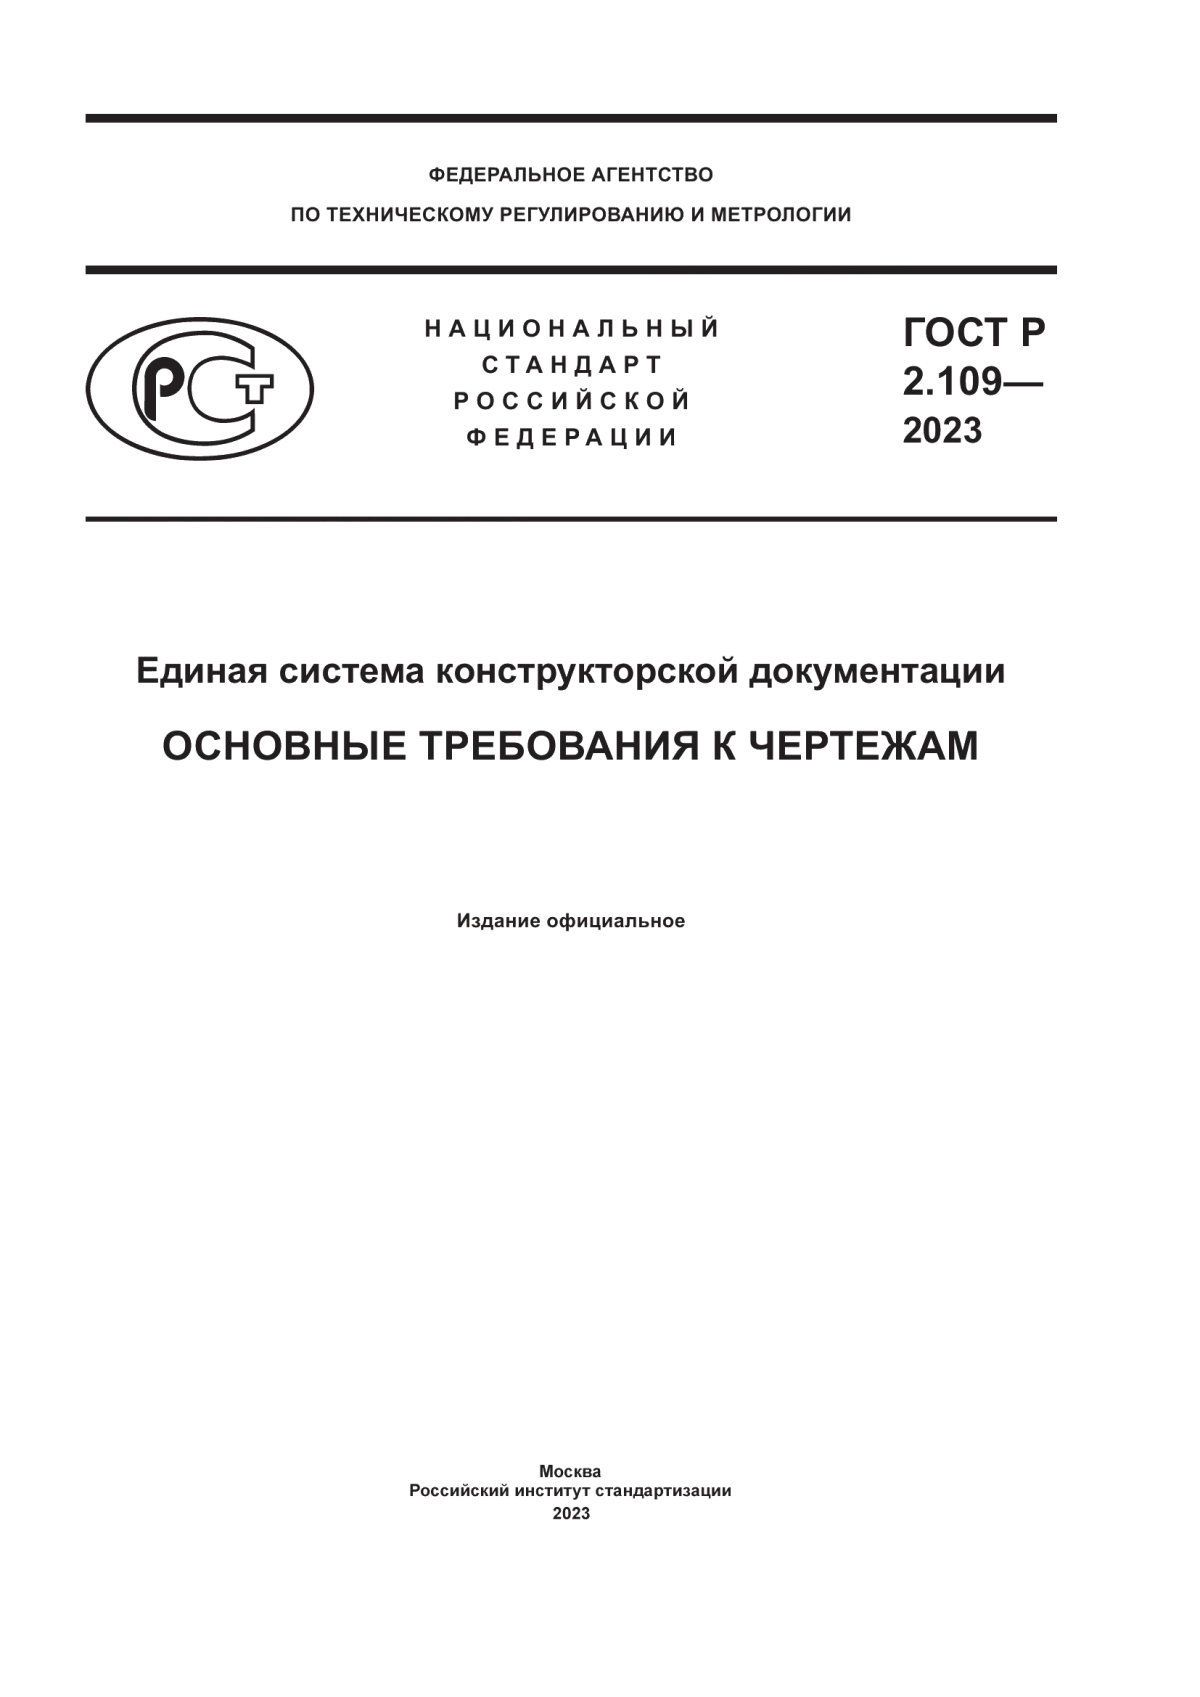 ГОСТ Р 2.109-2023 Единая система конструкторской документации. Основные требования к чертежам